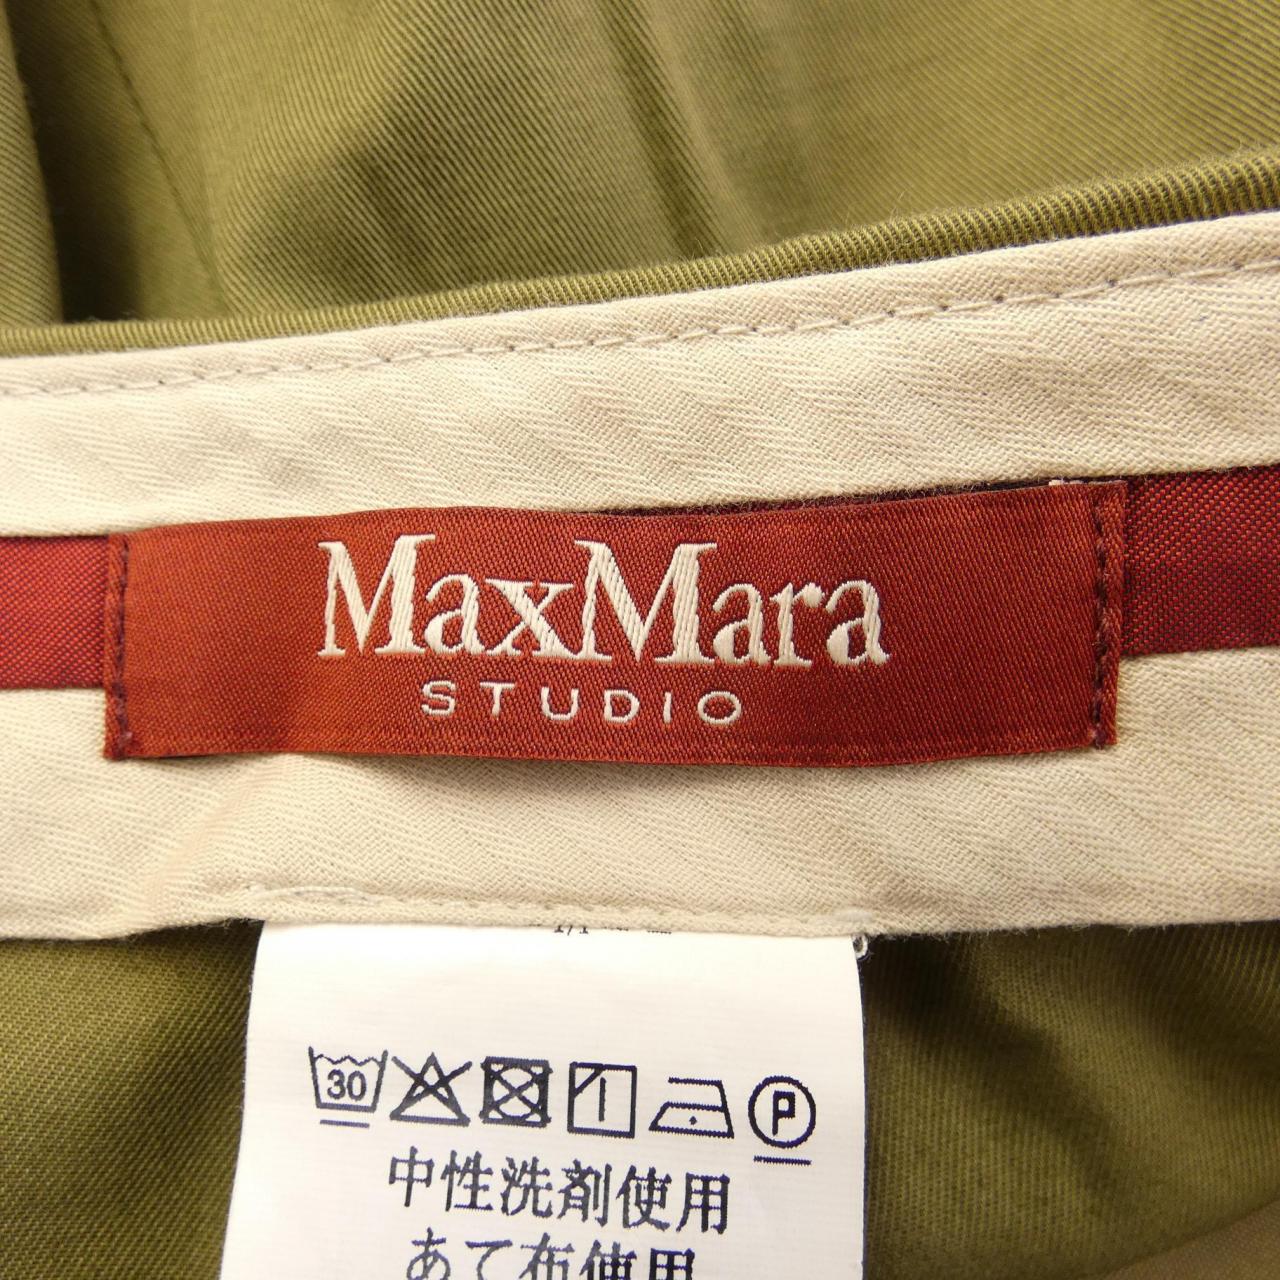 Max Mara STUDIO Mara STUDIO 褲子